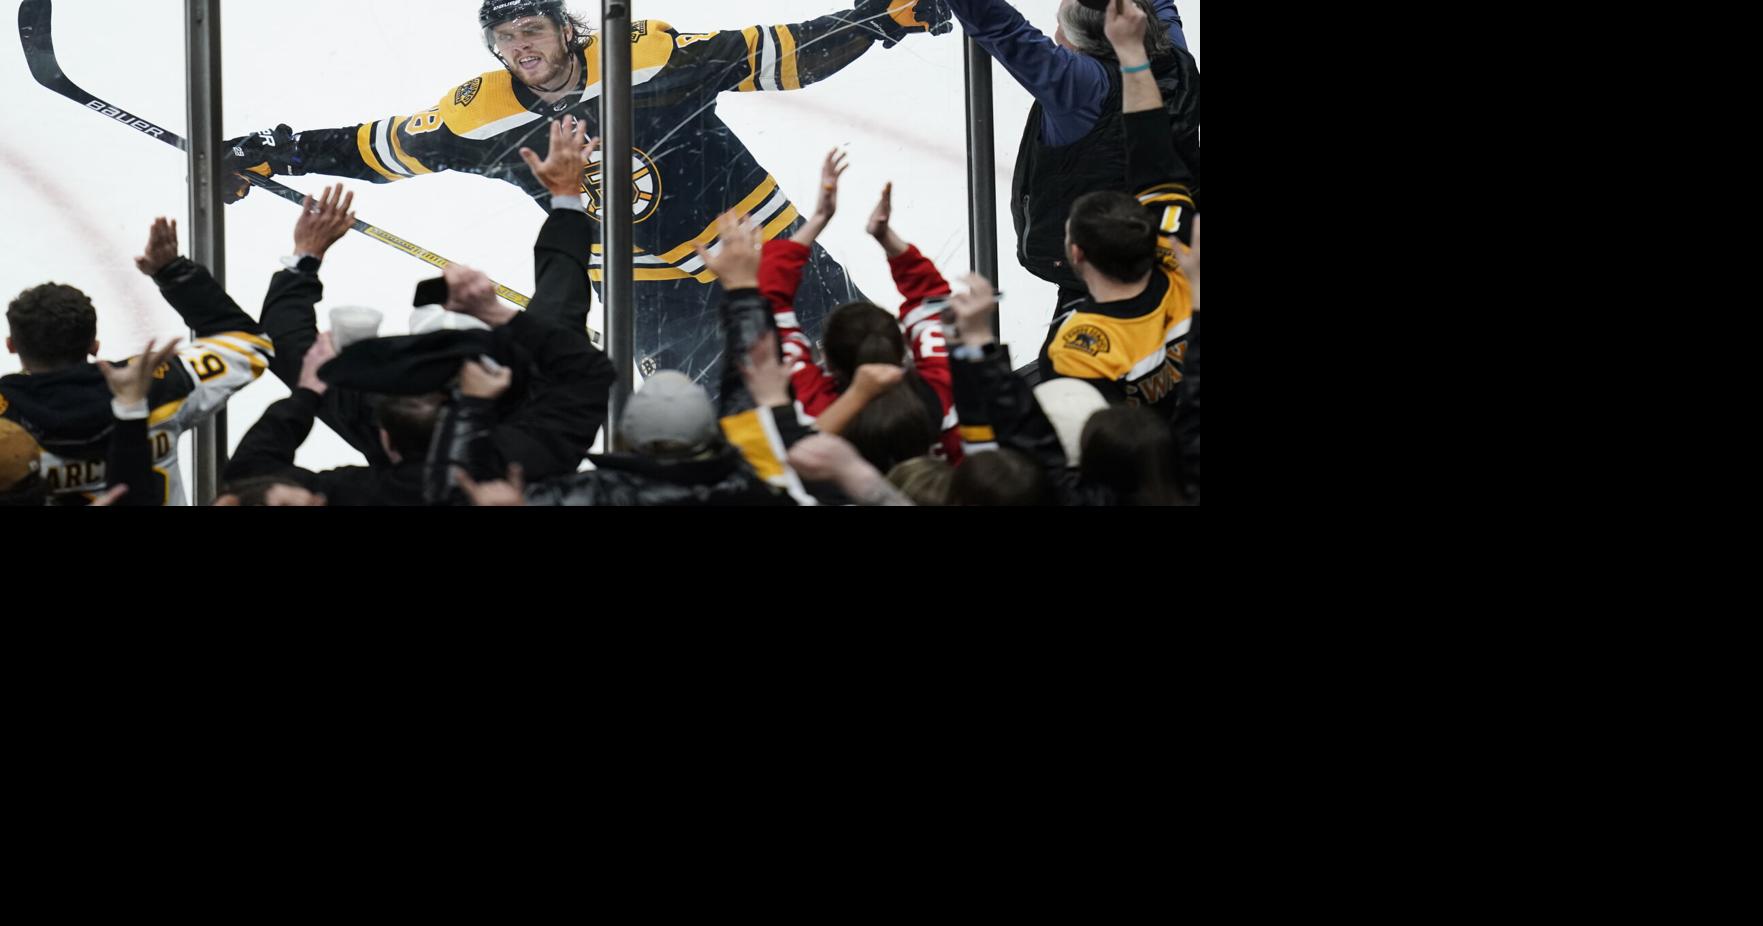 V hokejové hře: těstoviny se vaří, když Bruins porazí Tampu |  Sportovní